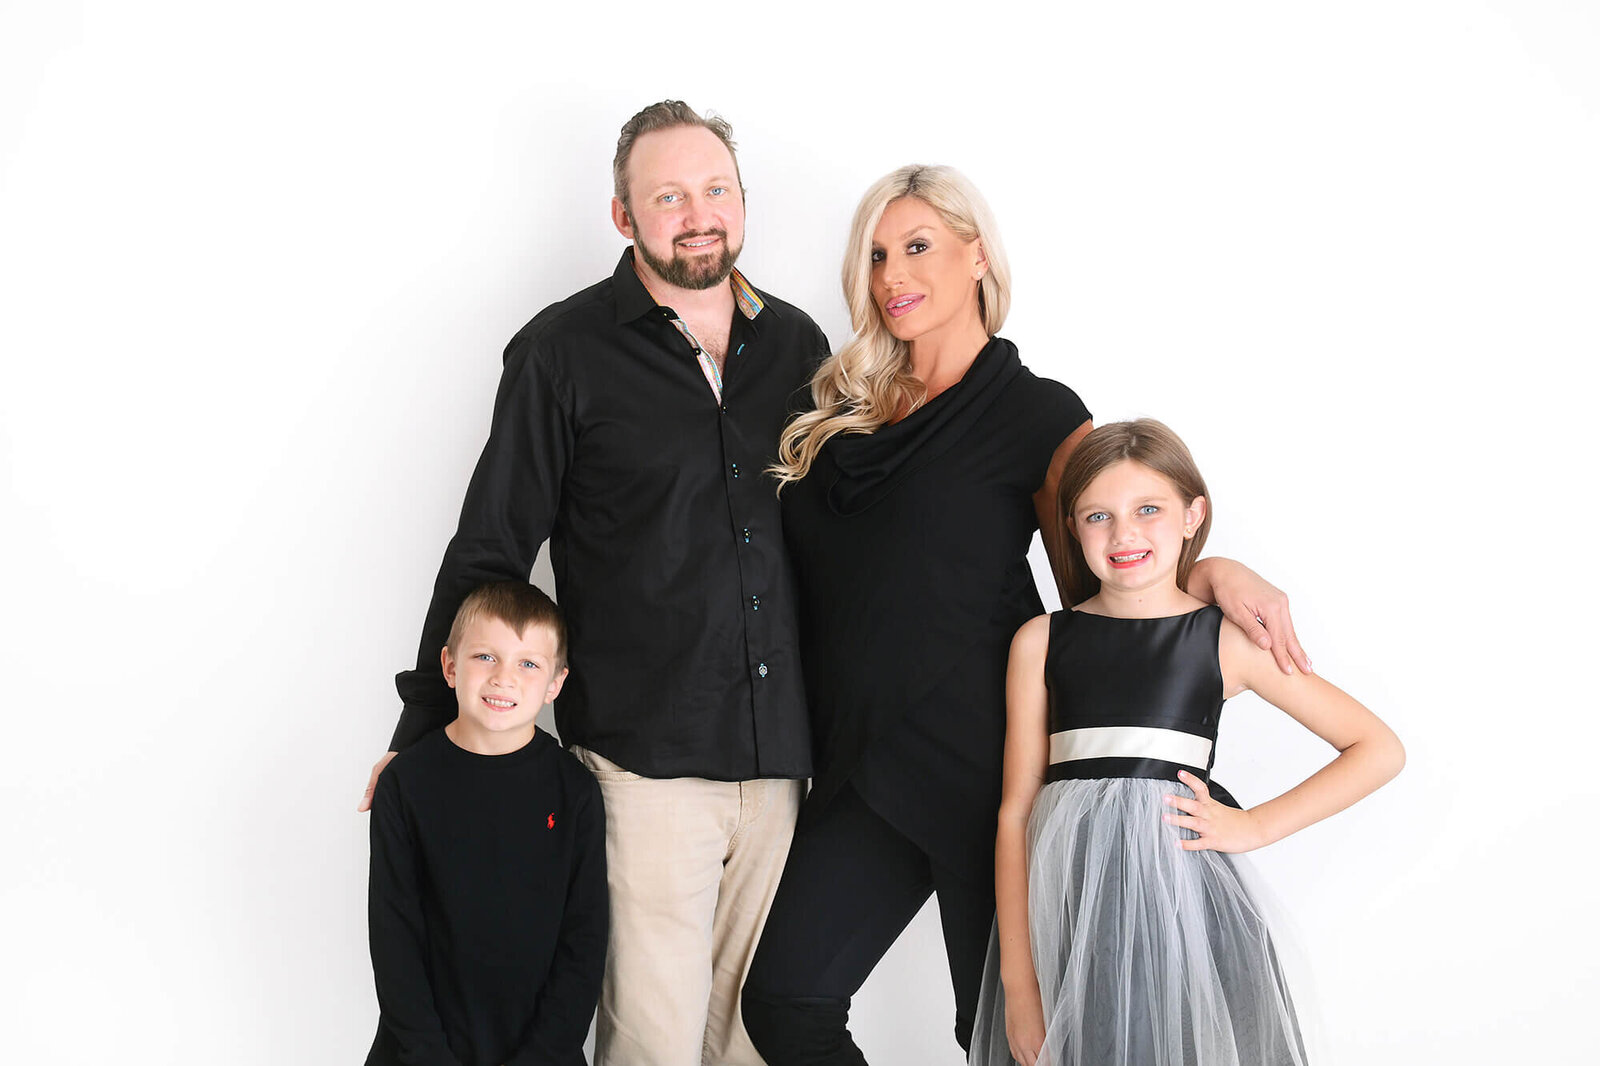 family poses and smiles at their family photoshoot in houston texas